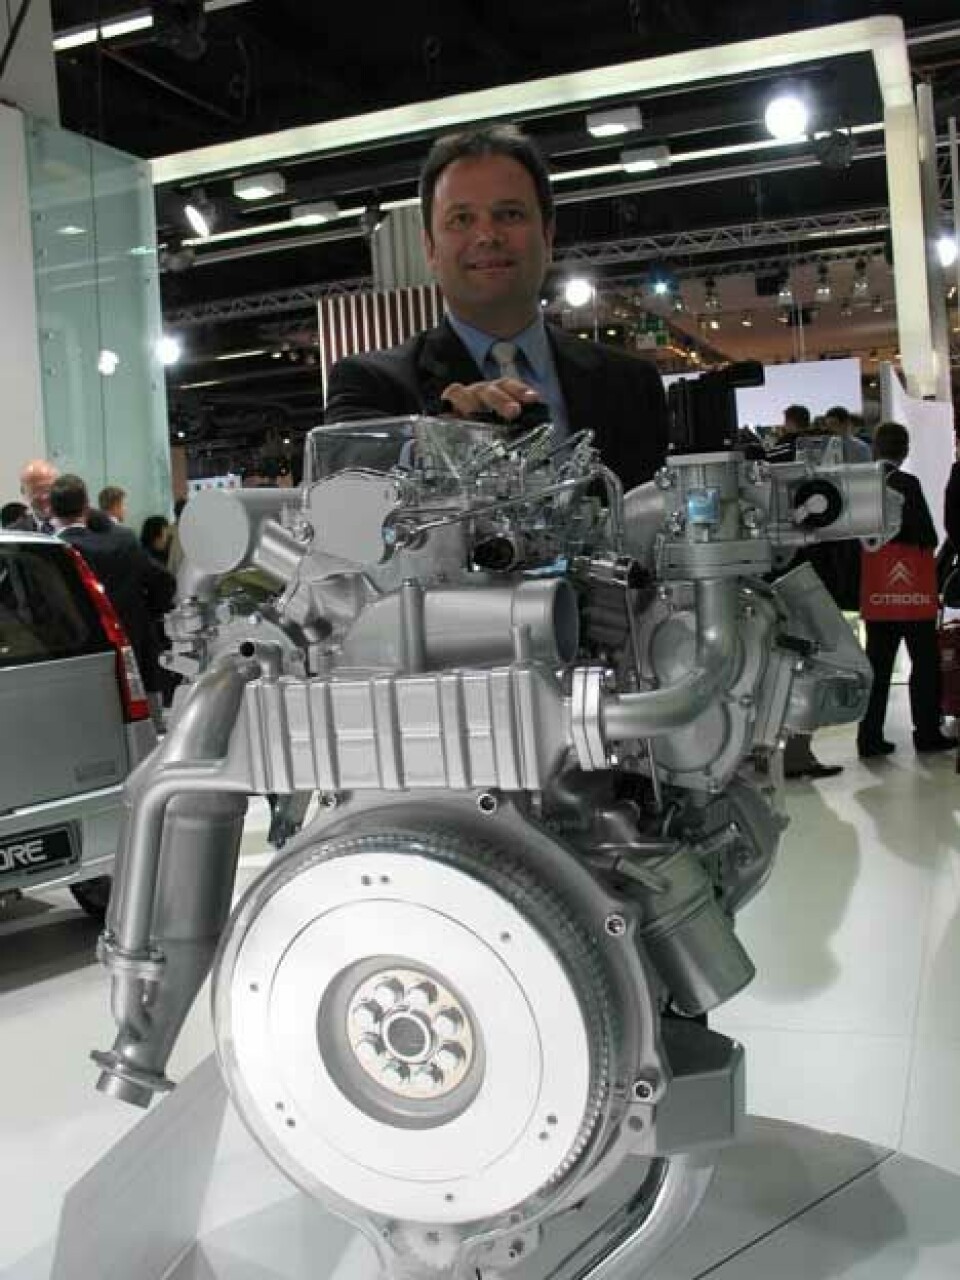 Bogdan Lis bak den spesielle motoren fra DaihatsuBogdan Lis bak den spesielle motoren fra Daihatsu